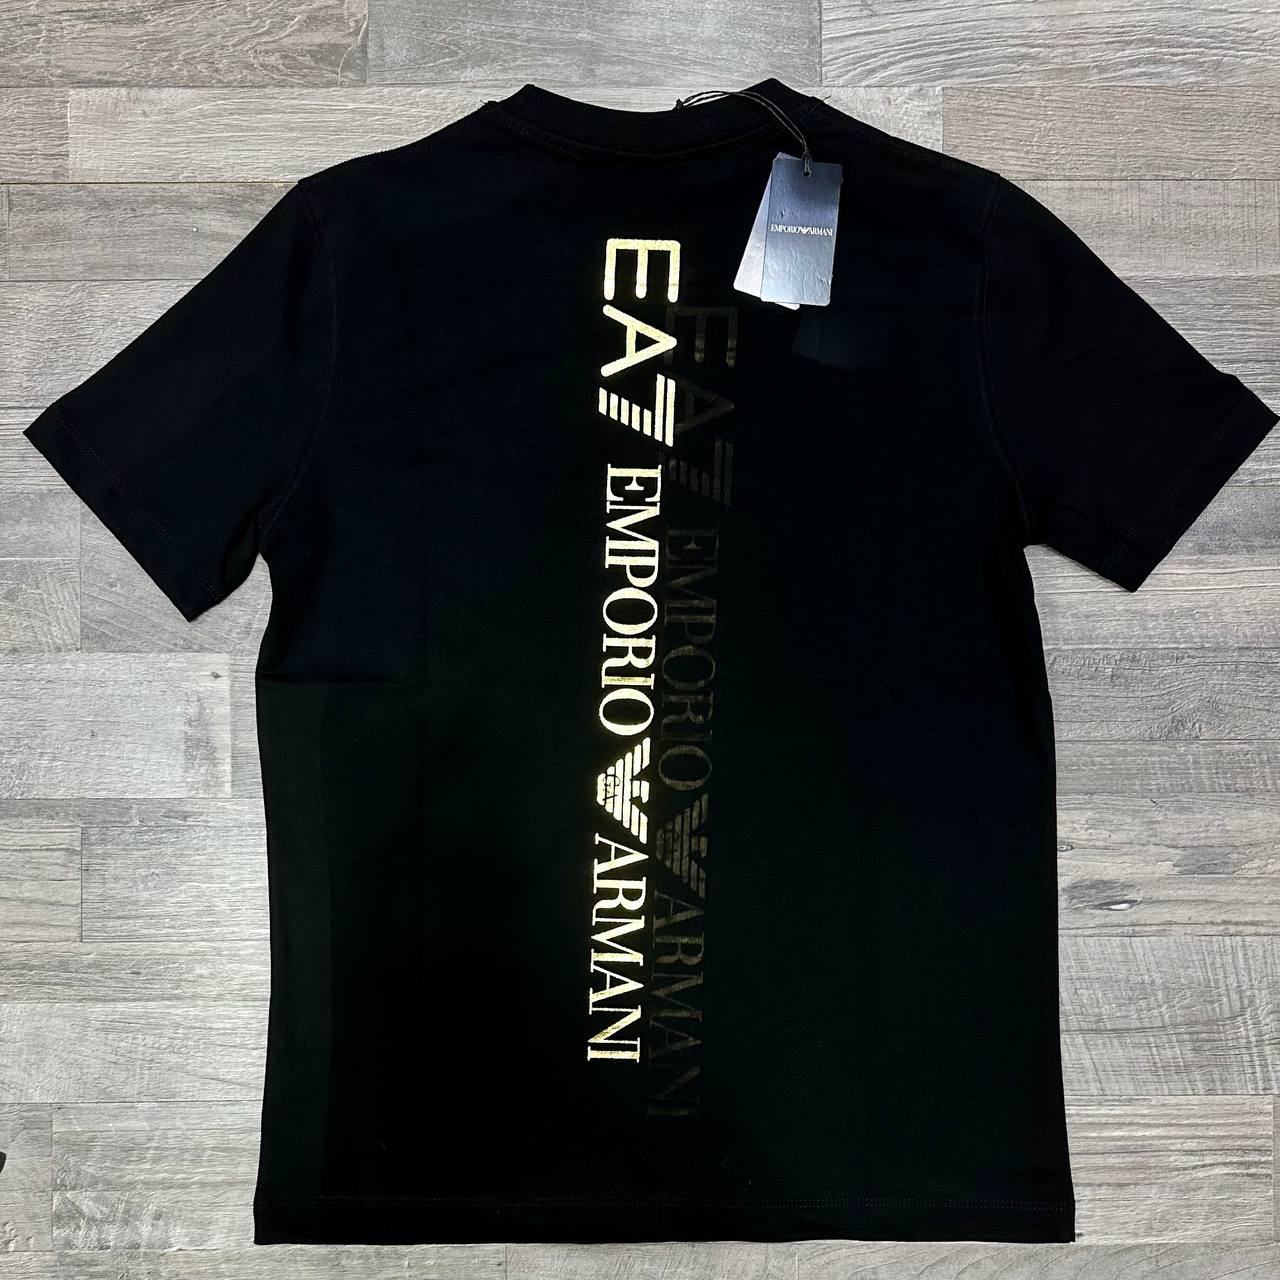 EA7 Emporio Armani Τ-shirt Gold logo